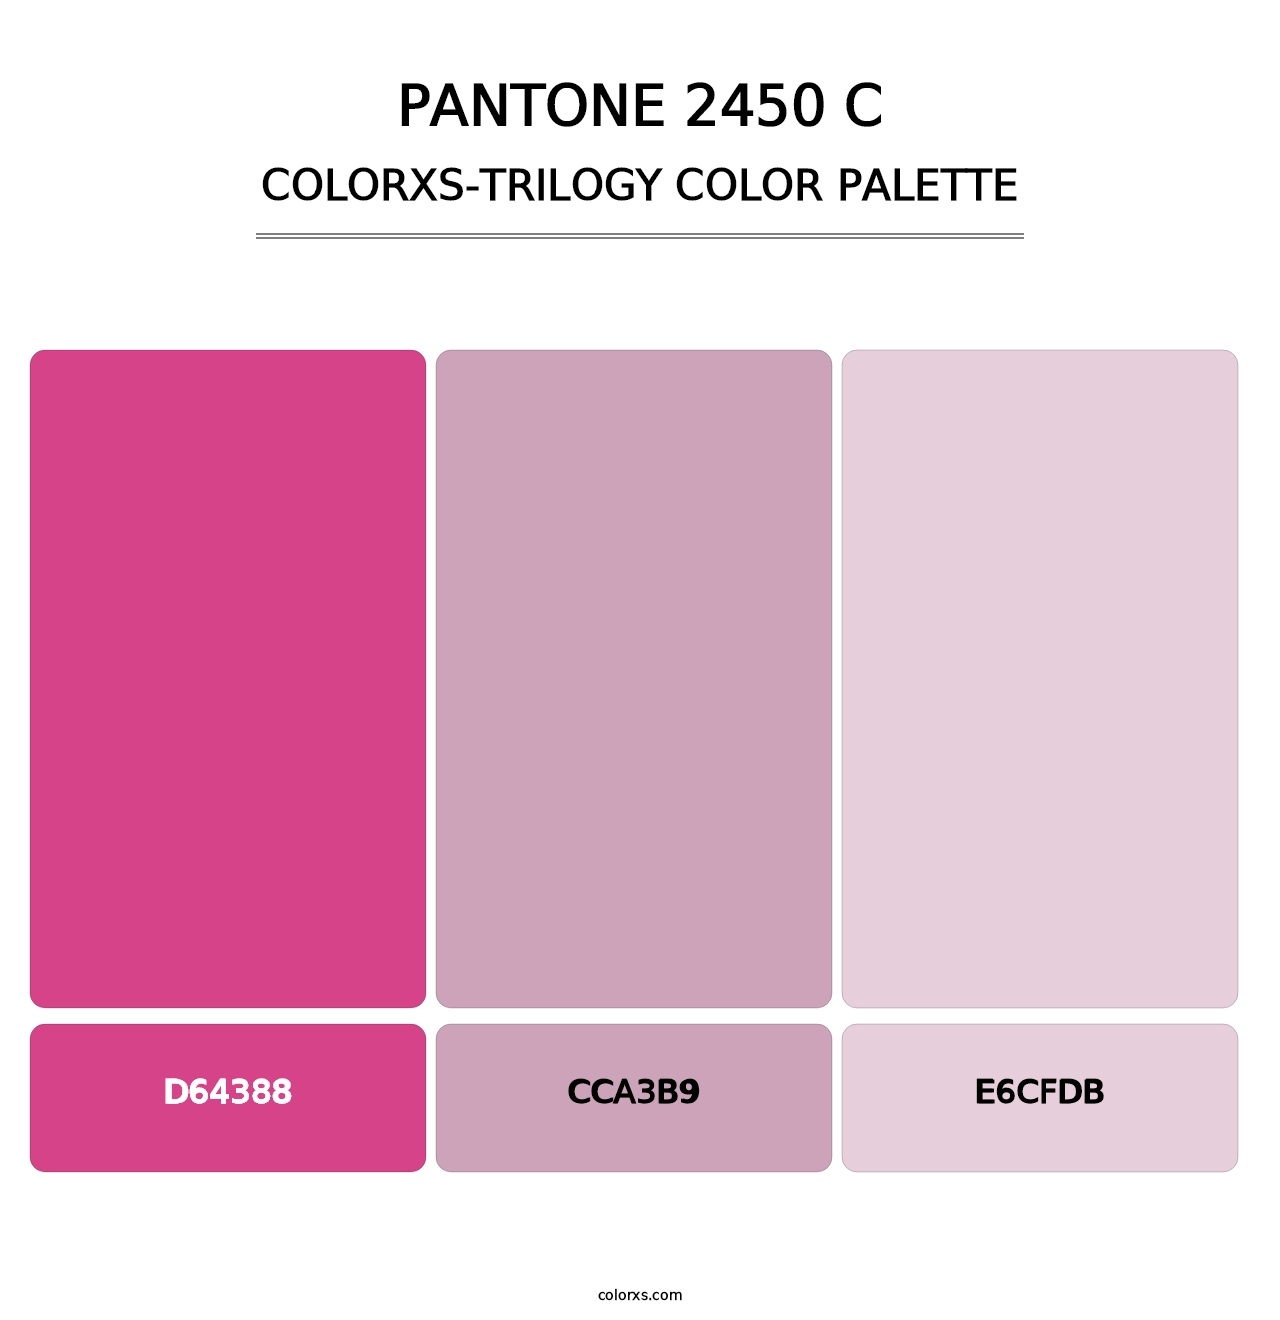 PANTONE 2450 C - Colorxs Trilogy Palette